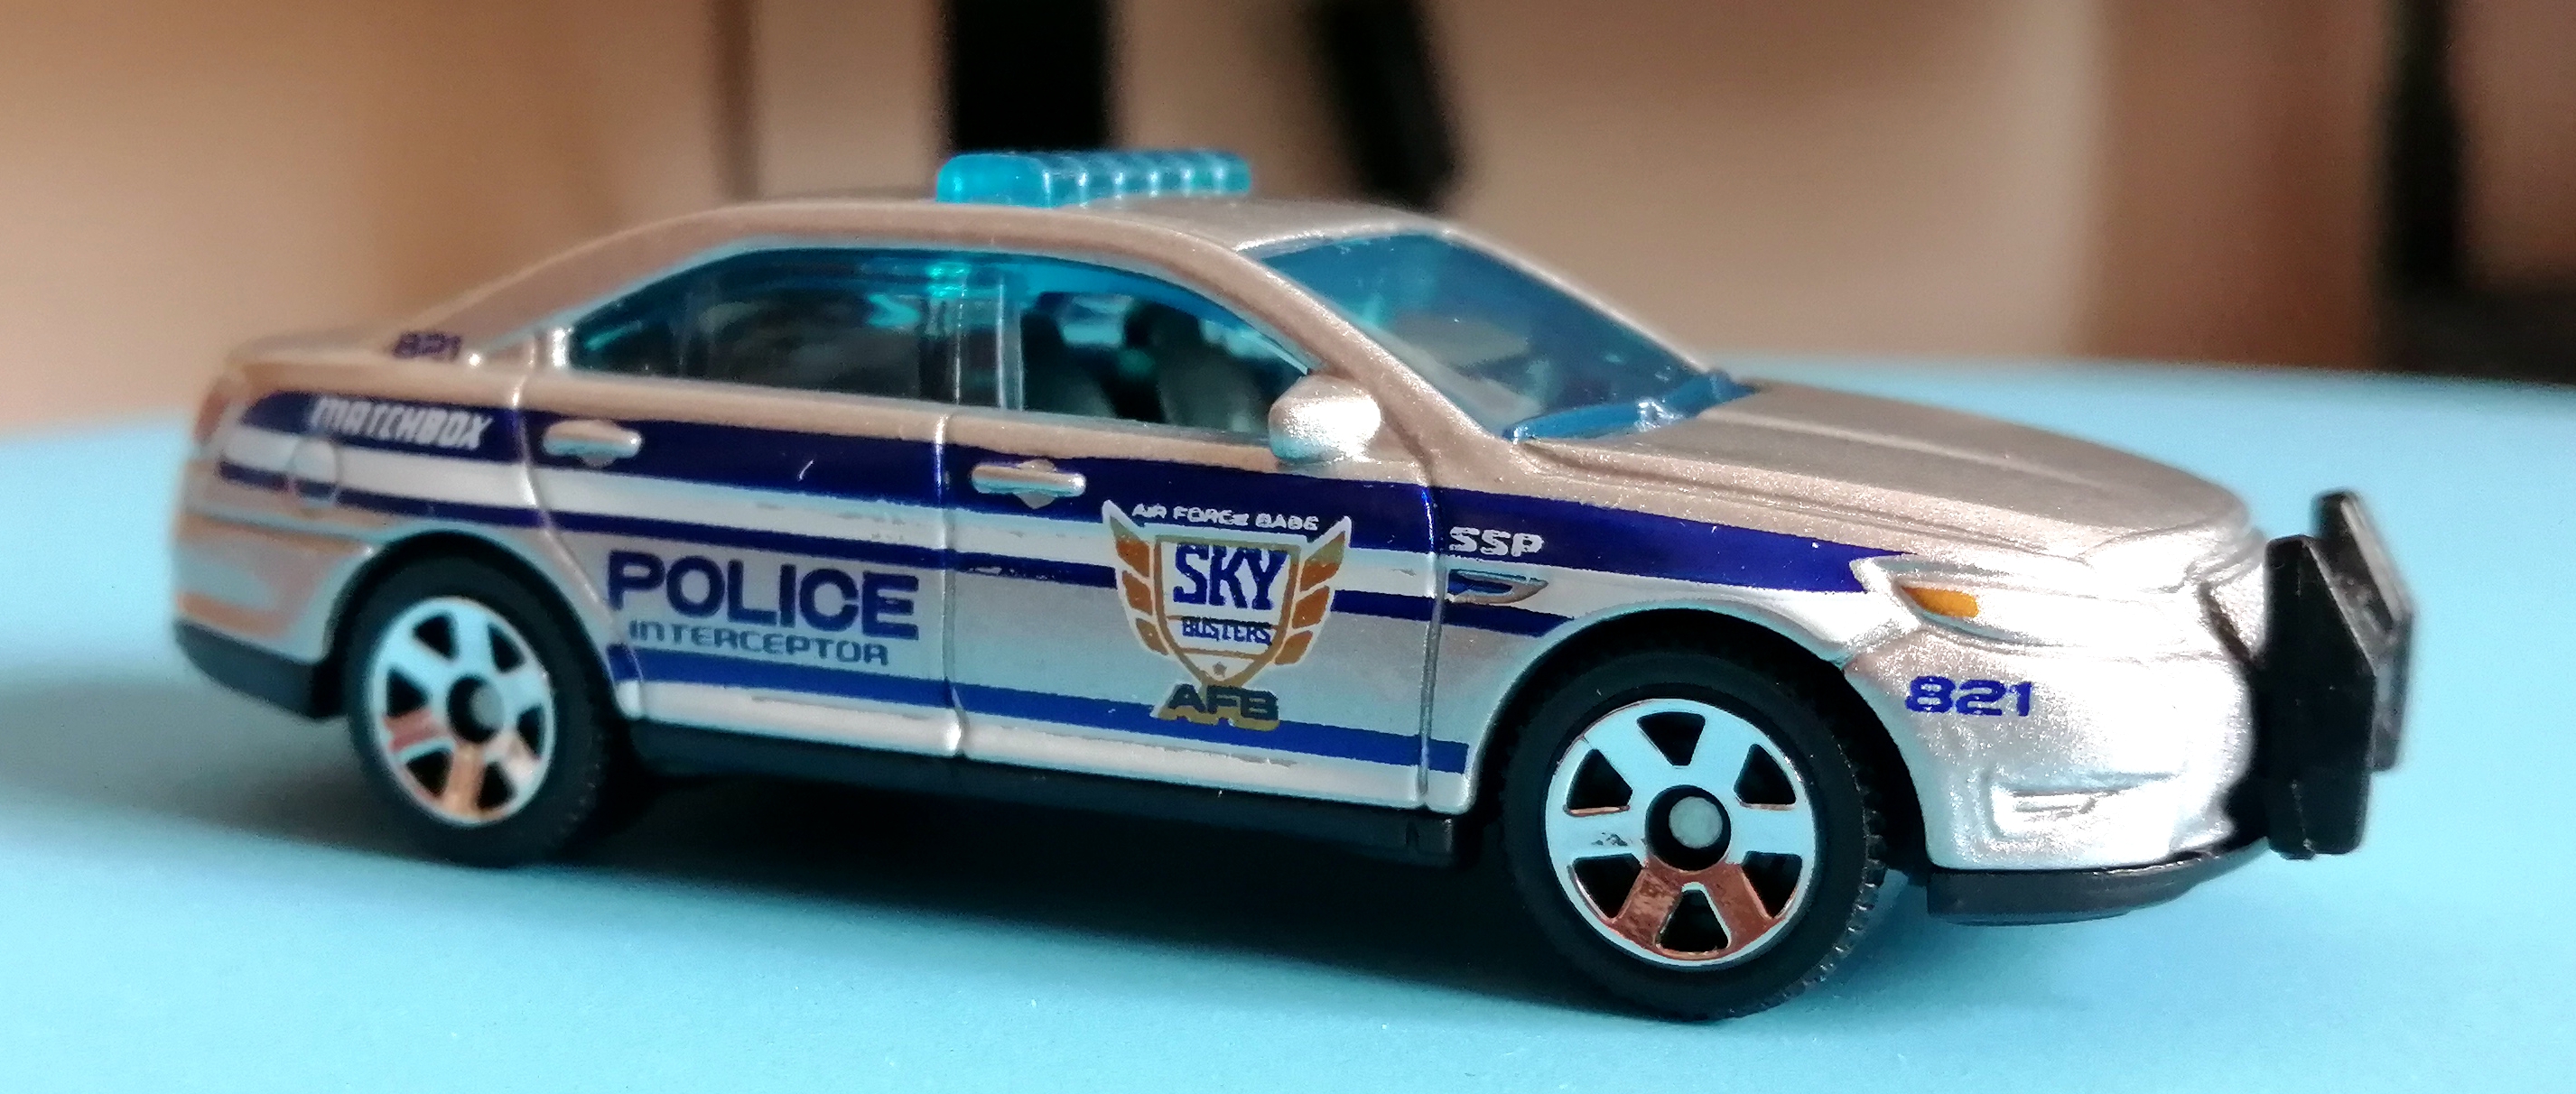 我的2020-matchbox:ford police interceptor(福特拦截者金牛座警车)